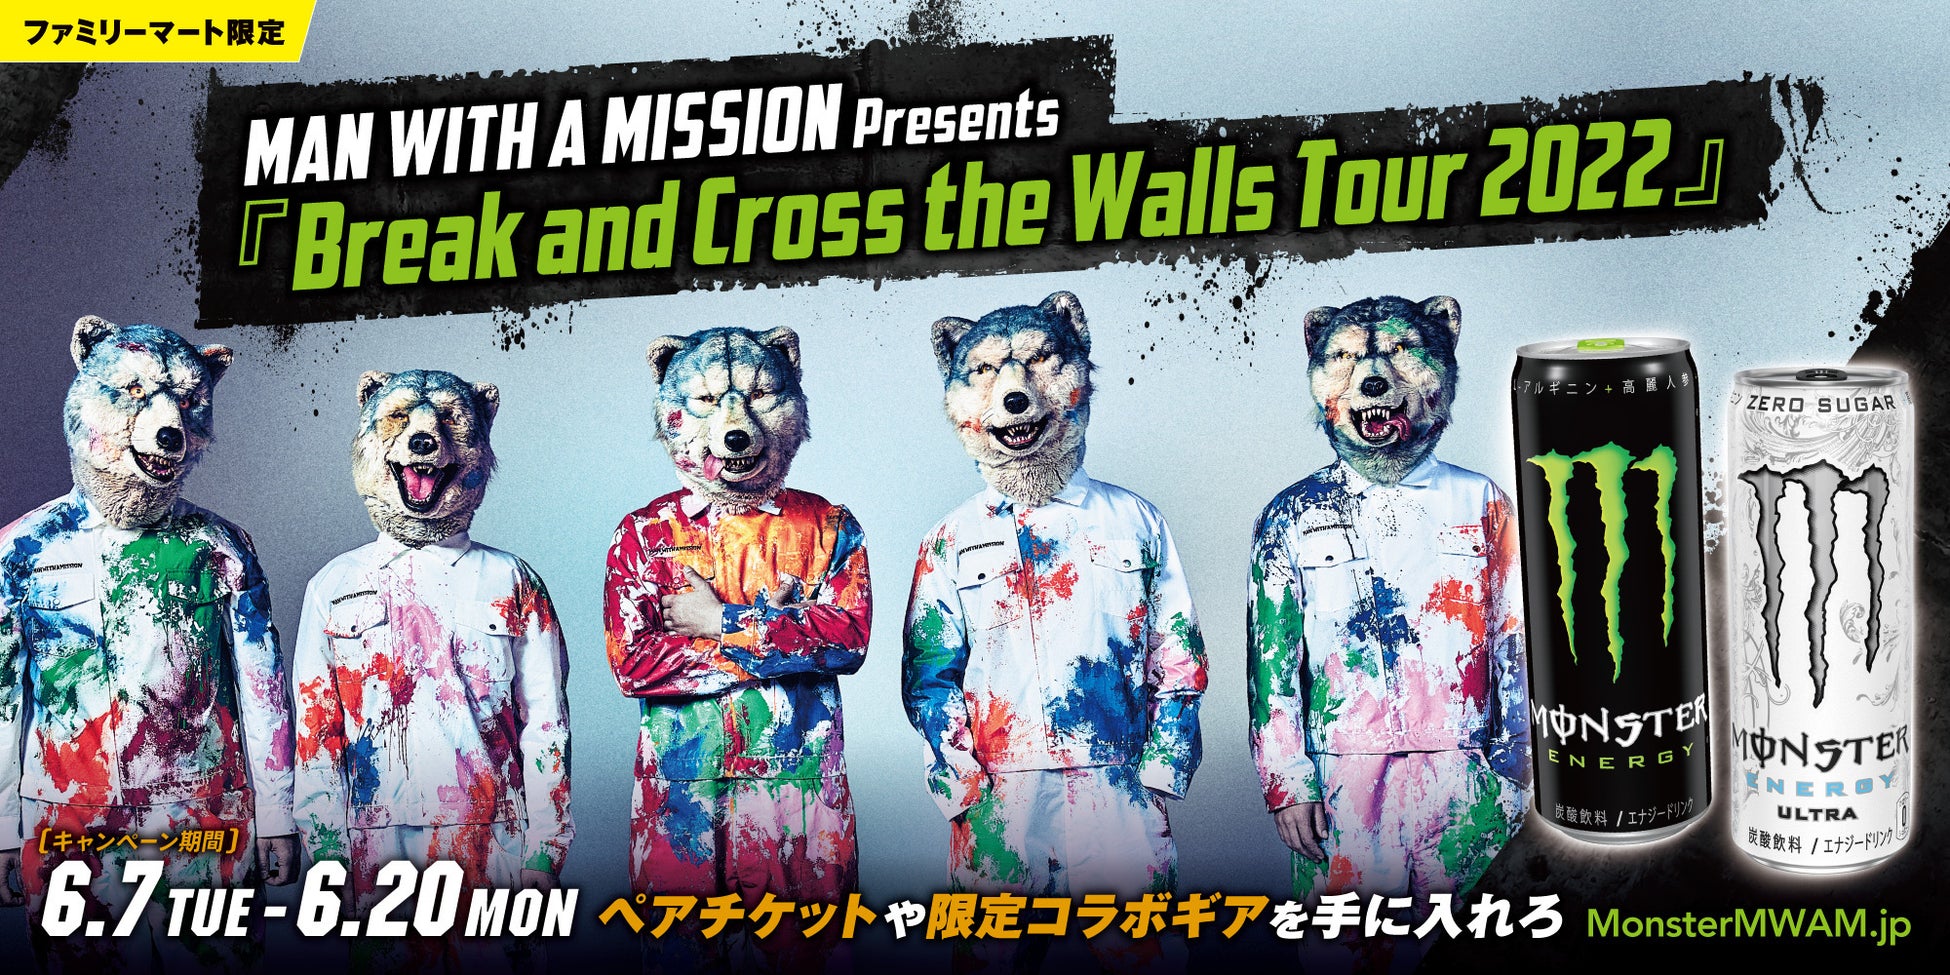 即日完売したMAN WITH A MISSIONの全国ツアーに行けるチャンス！「Break and Cross the Walls Tour 2022 キャンペーン」開催のサブ画像1